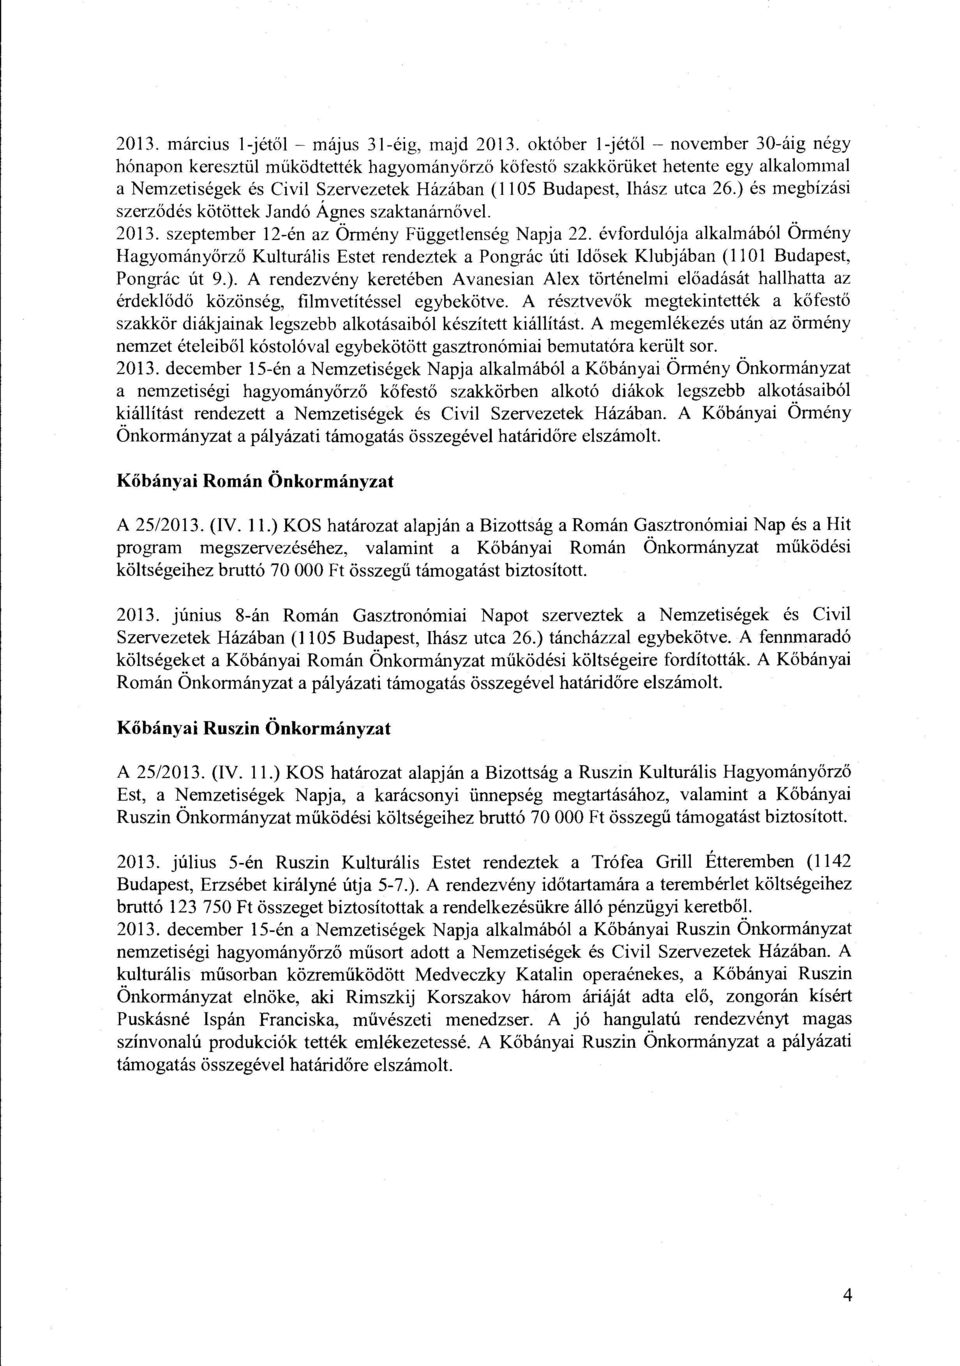 ) és megbízási szerzödés kötöttek J and ó Ágnes szaktanárnövel 2013. szeptember 12-én az Örmény Függetlenség Napja 22.